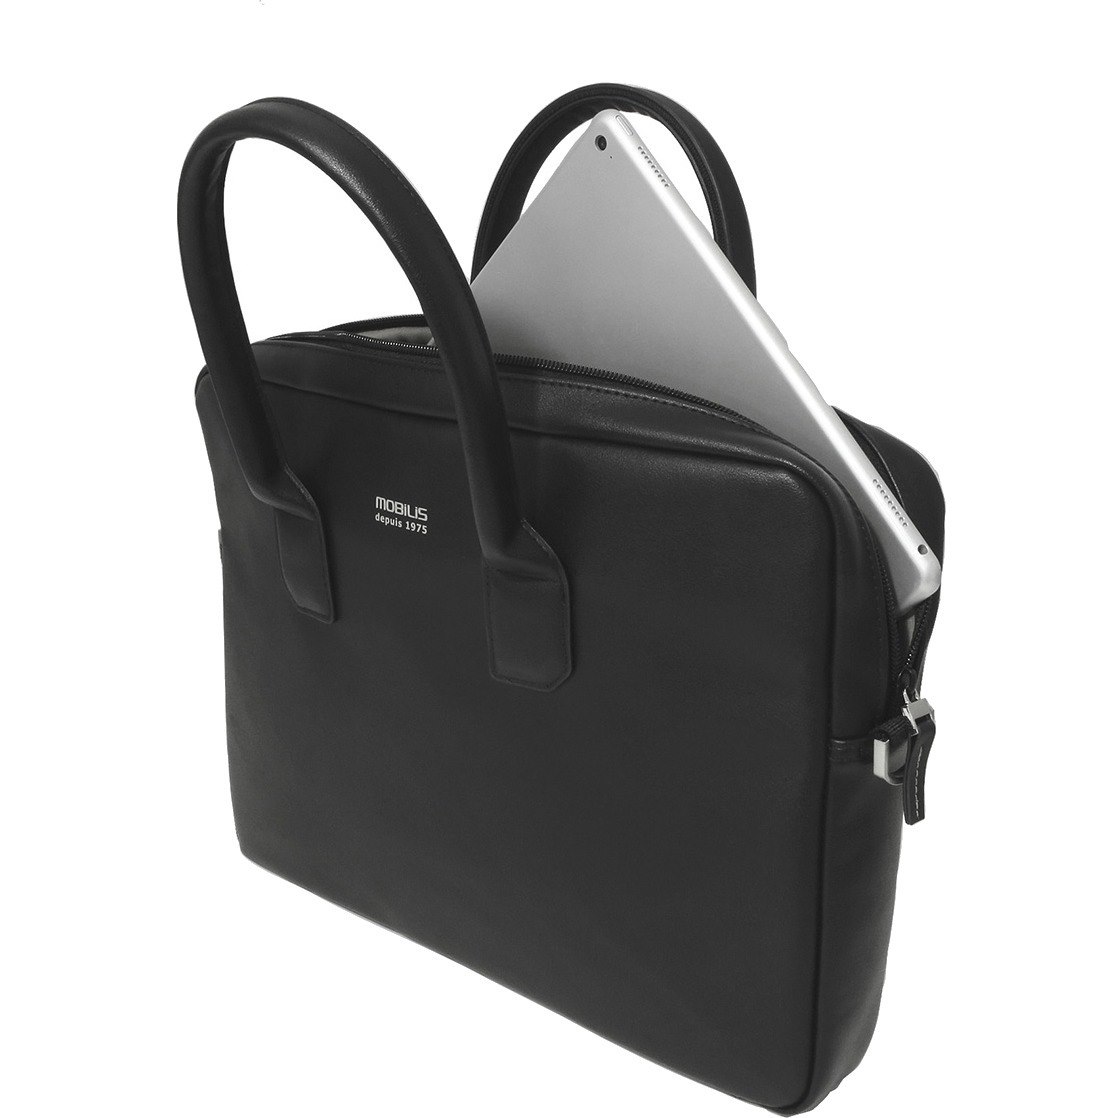 MOBILIS Origine Carrying Case (Briefcase) for 27.9 cm (11") to 35.6 cm (14") Notebook - Black